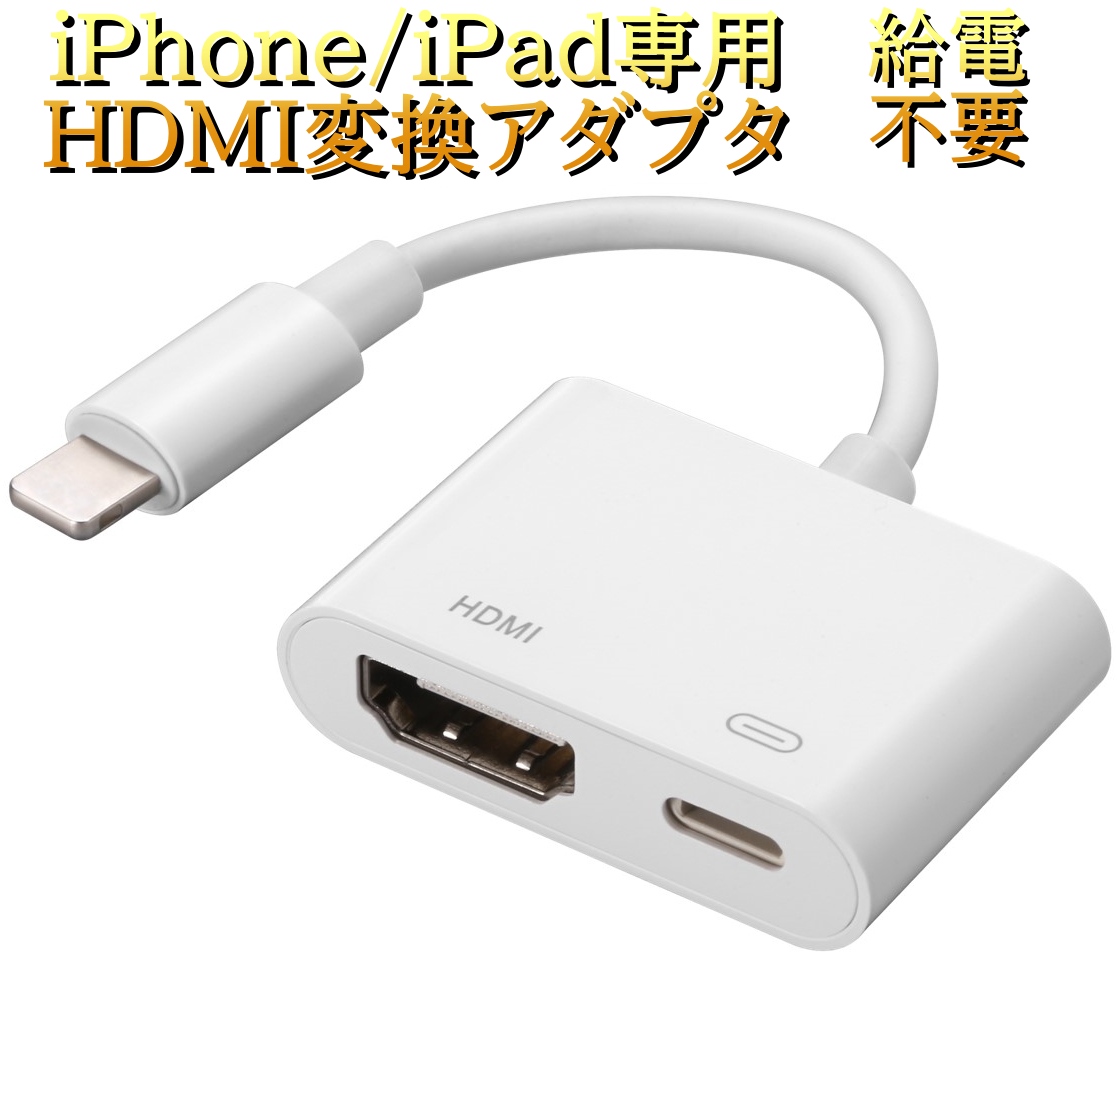 魅力的な iPhone用 HDMI 変換アダプター 防熱 MFI認証 24ヶ月保証 iPad lightning用 変換 ケーブル  ユーチューブをテレビで見る 1080P 設定不要 大画面 簡単接続